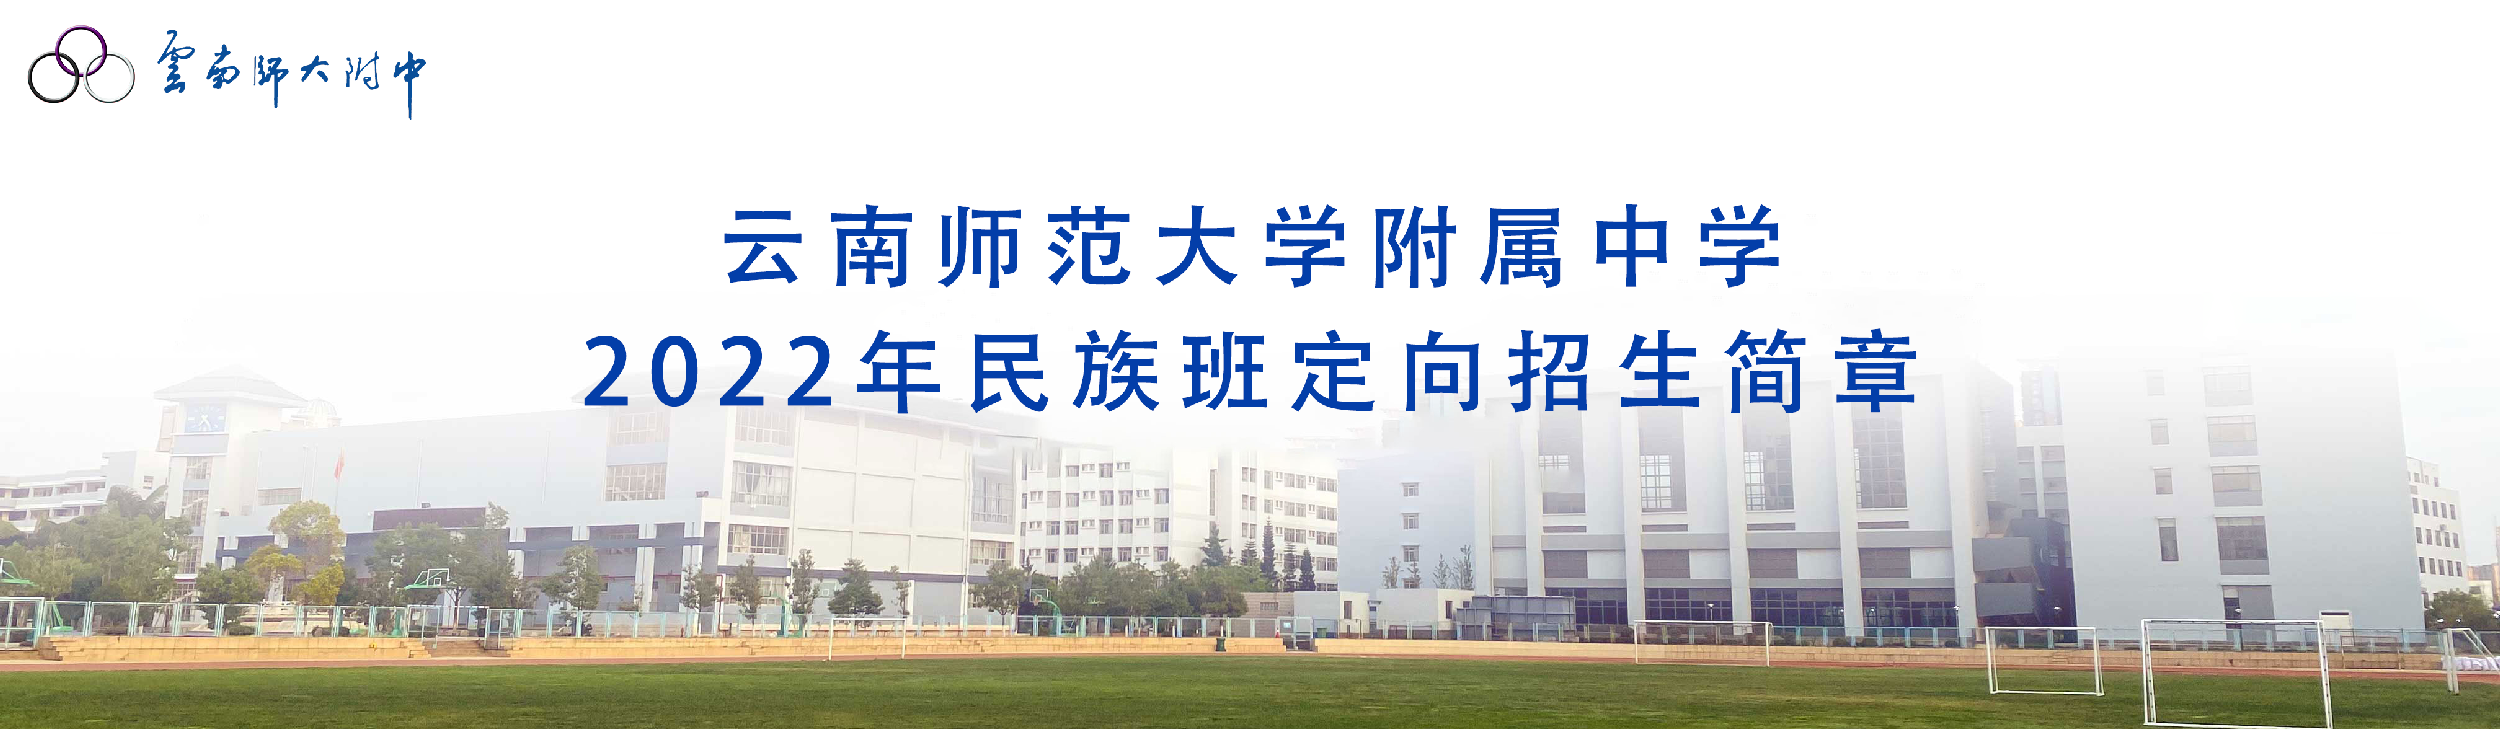 云南师范大学附属中学2022年民族班定向招生简章